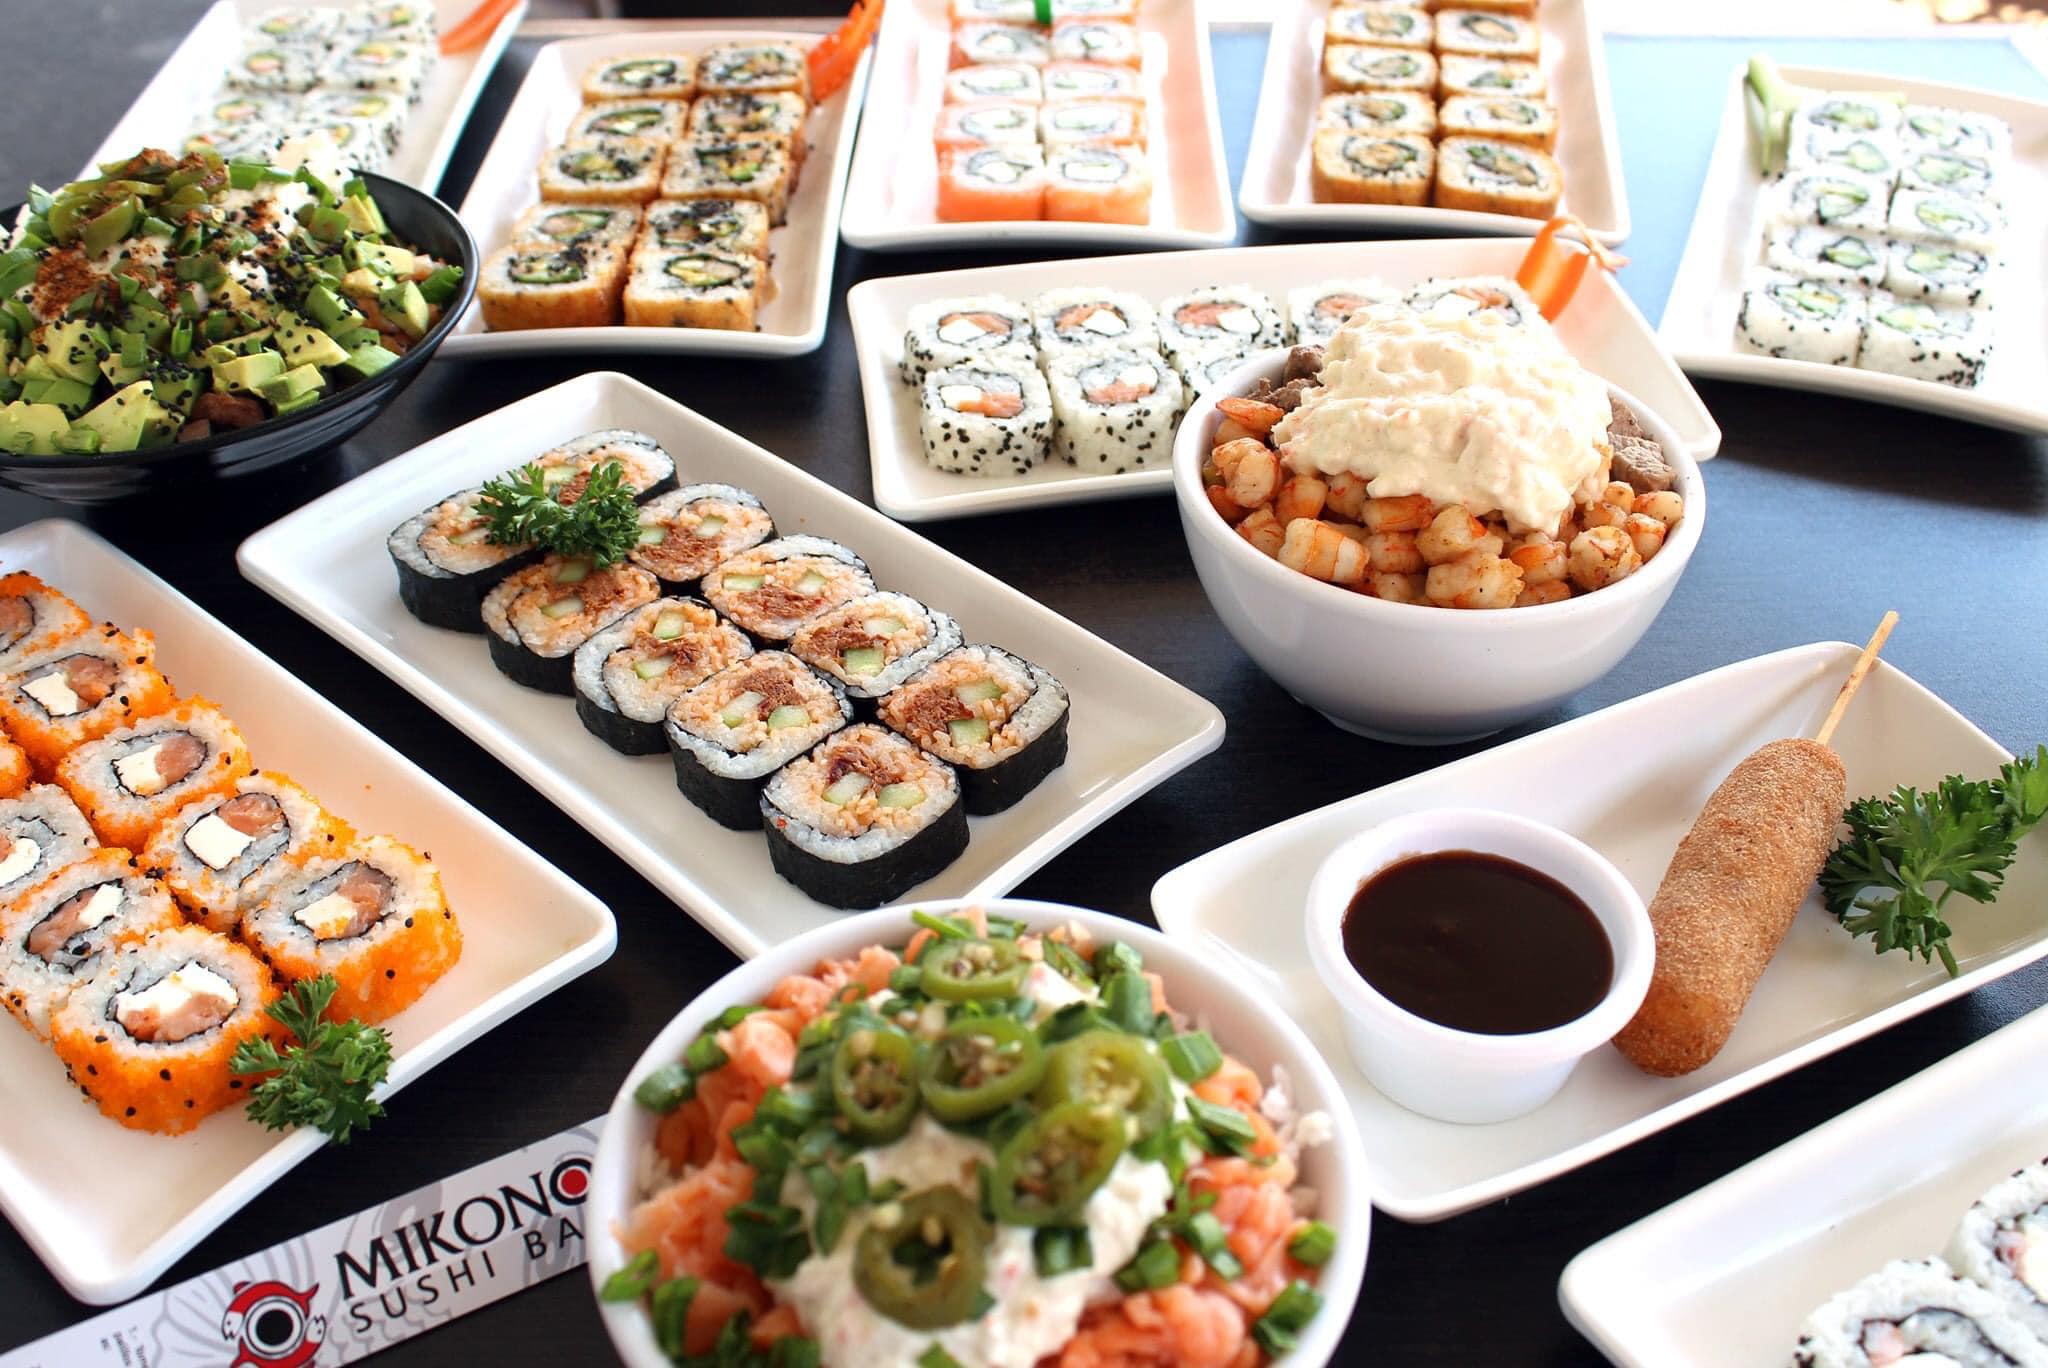 Images Mikono Sushi Bar